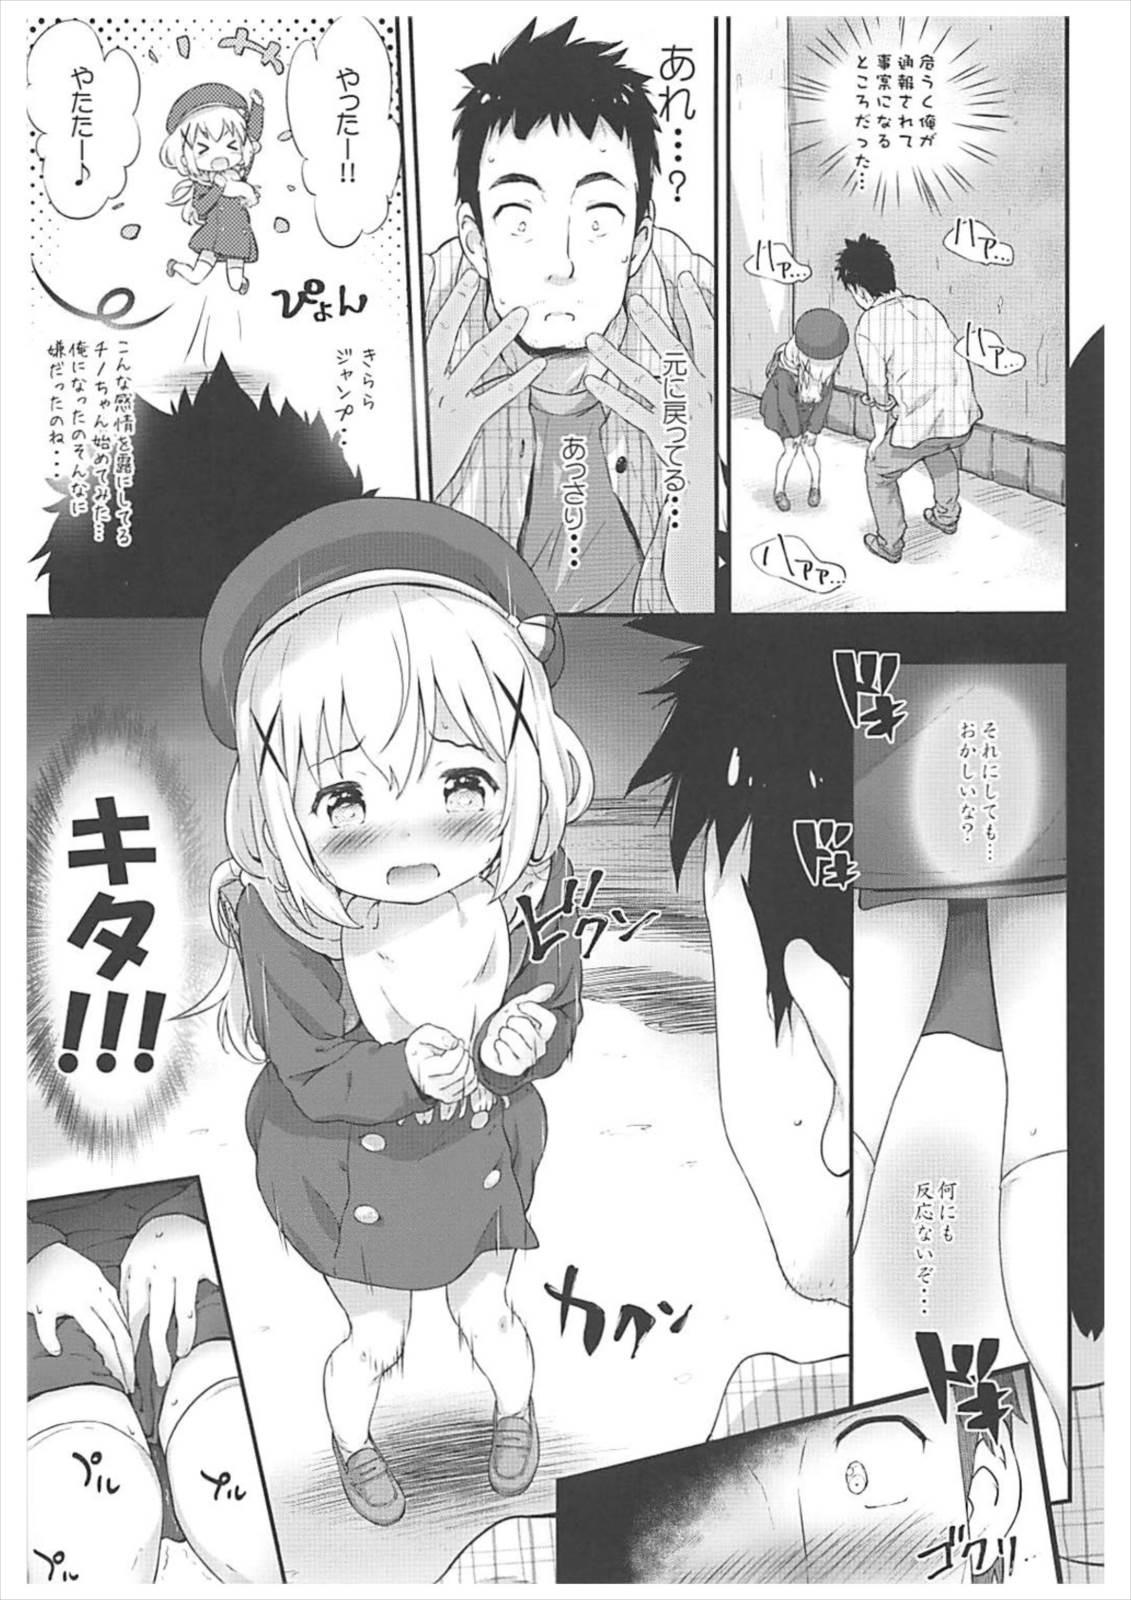 Fucking Toro Musume 14 Chino-chan Hajimemashita 2 kai - Gochuumon wa usagi desu ka Style - Page 6